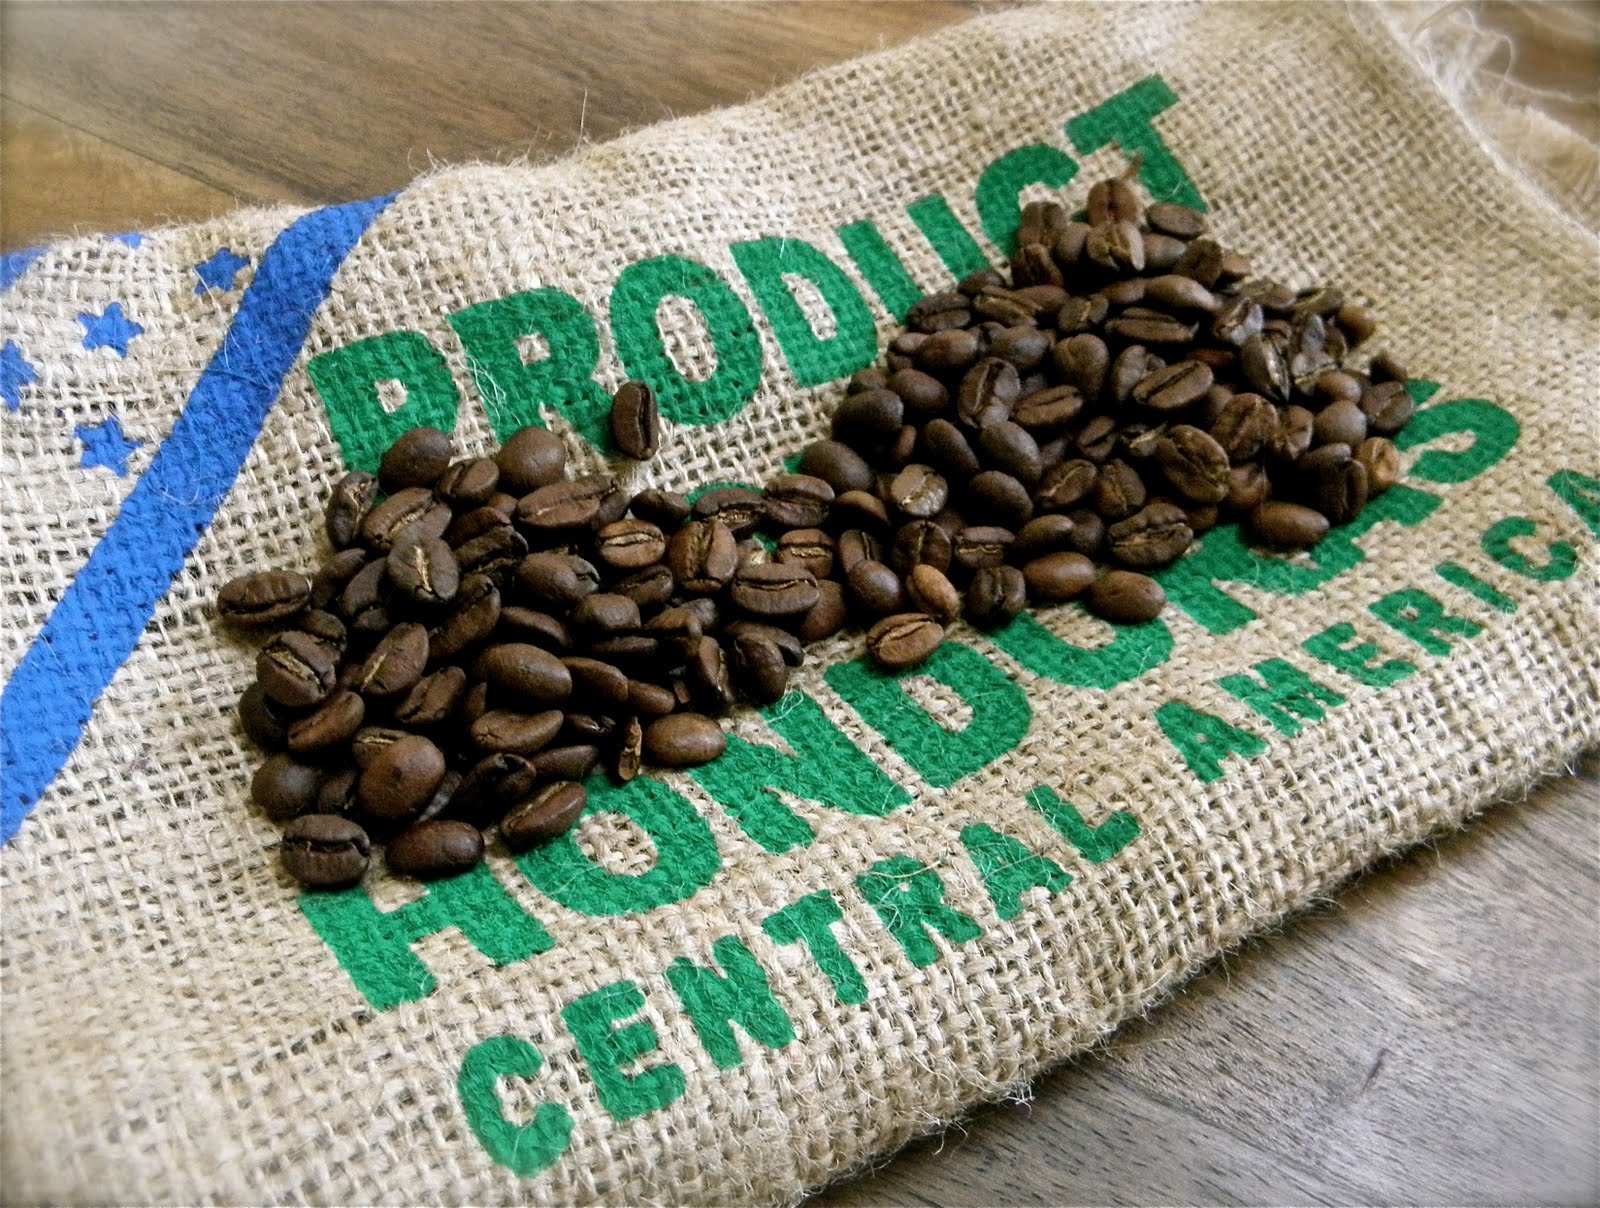 洪都拉斯咖啡产区新闻 中美洲移民潮下洪都拉斯咖啡出货量翻倍